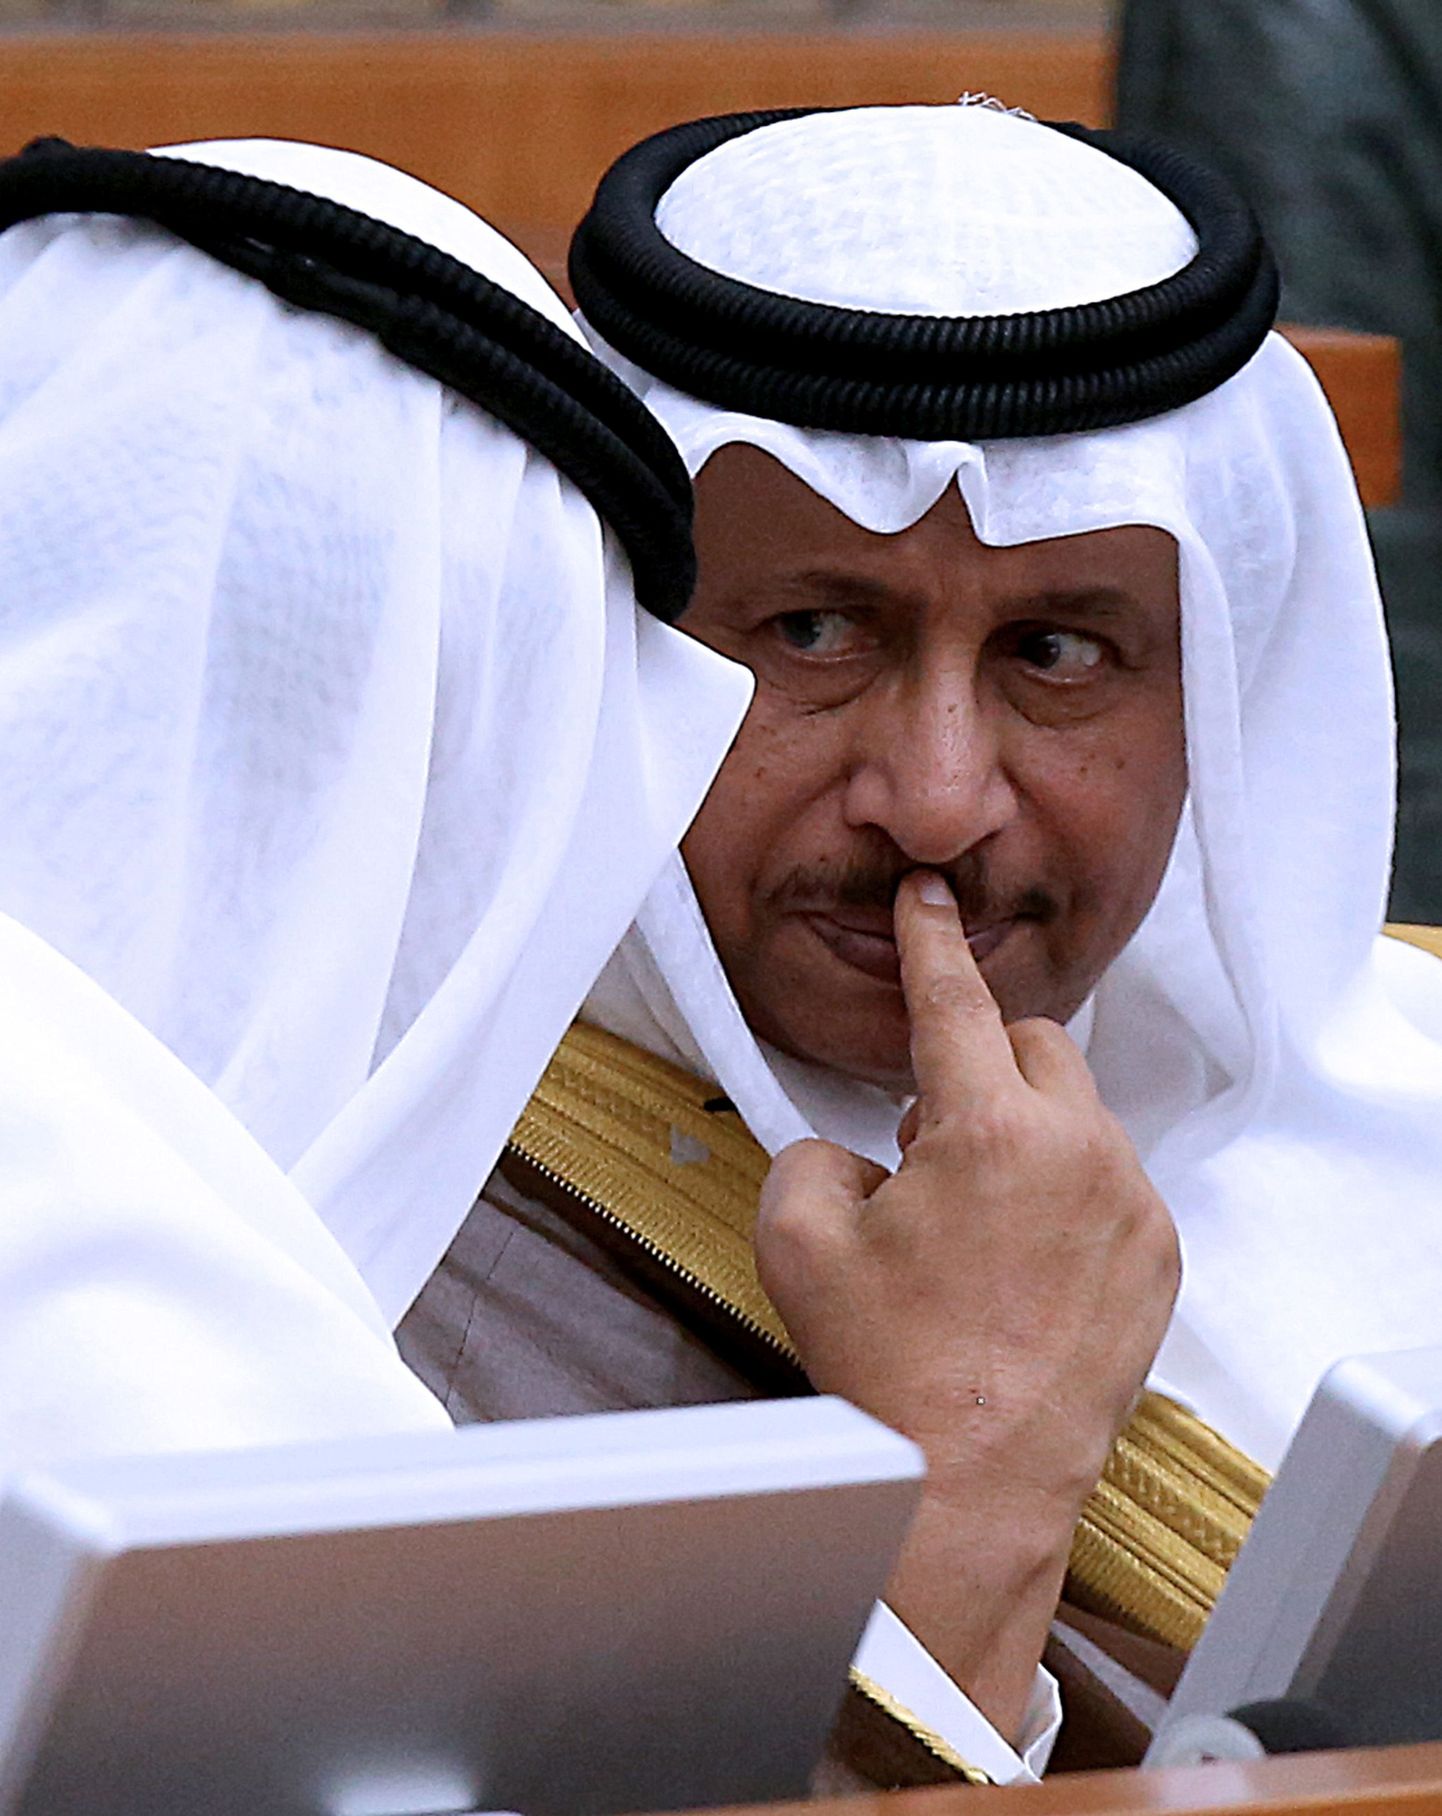 Kuveidi peaminister šeik Jaber al-Mubarak al-Sabah.